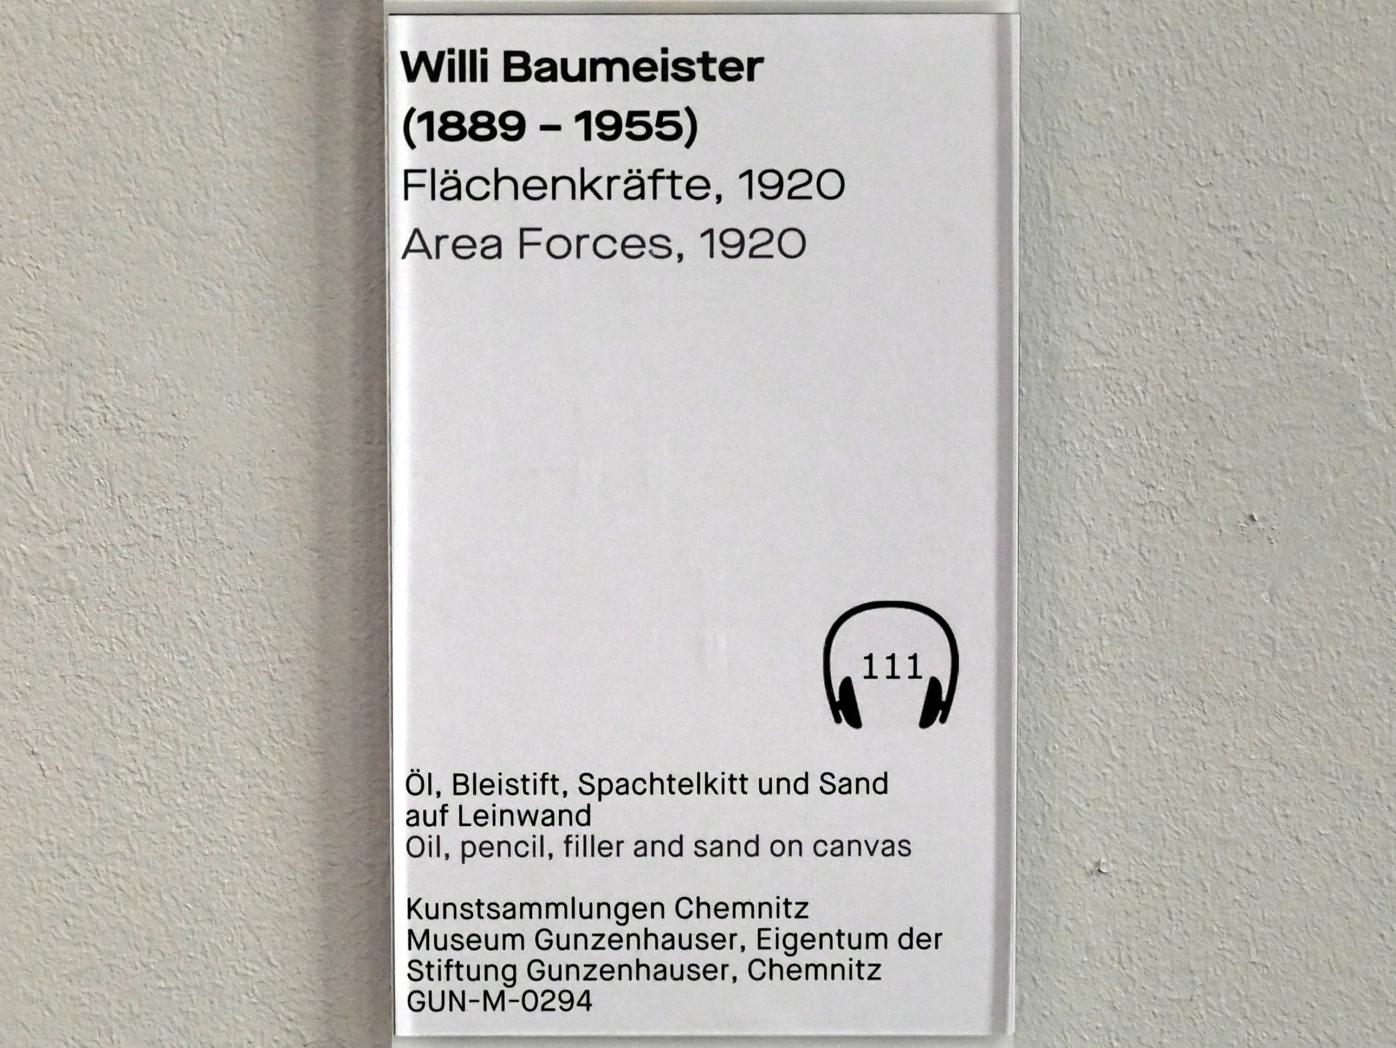 Willi Baumeister (1913–1955), Flächenkräfte, Chemnitz, Museum Gunzenhauser, Saal 3.11 - Bauhaus, 1920, Bild 2/2